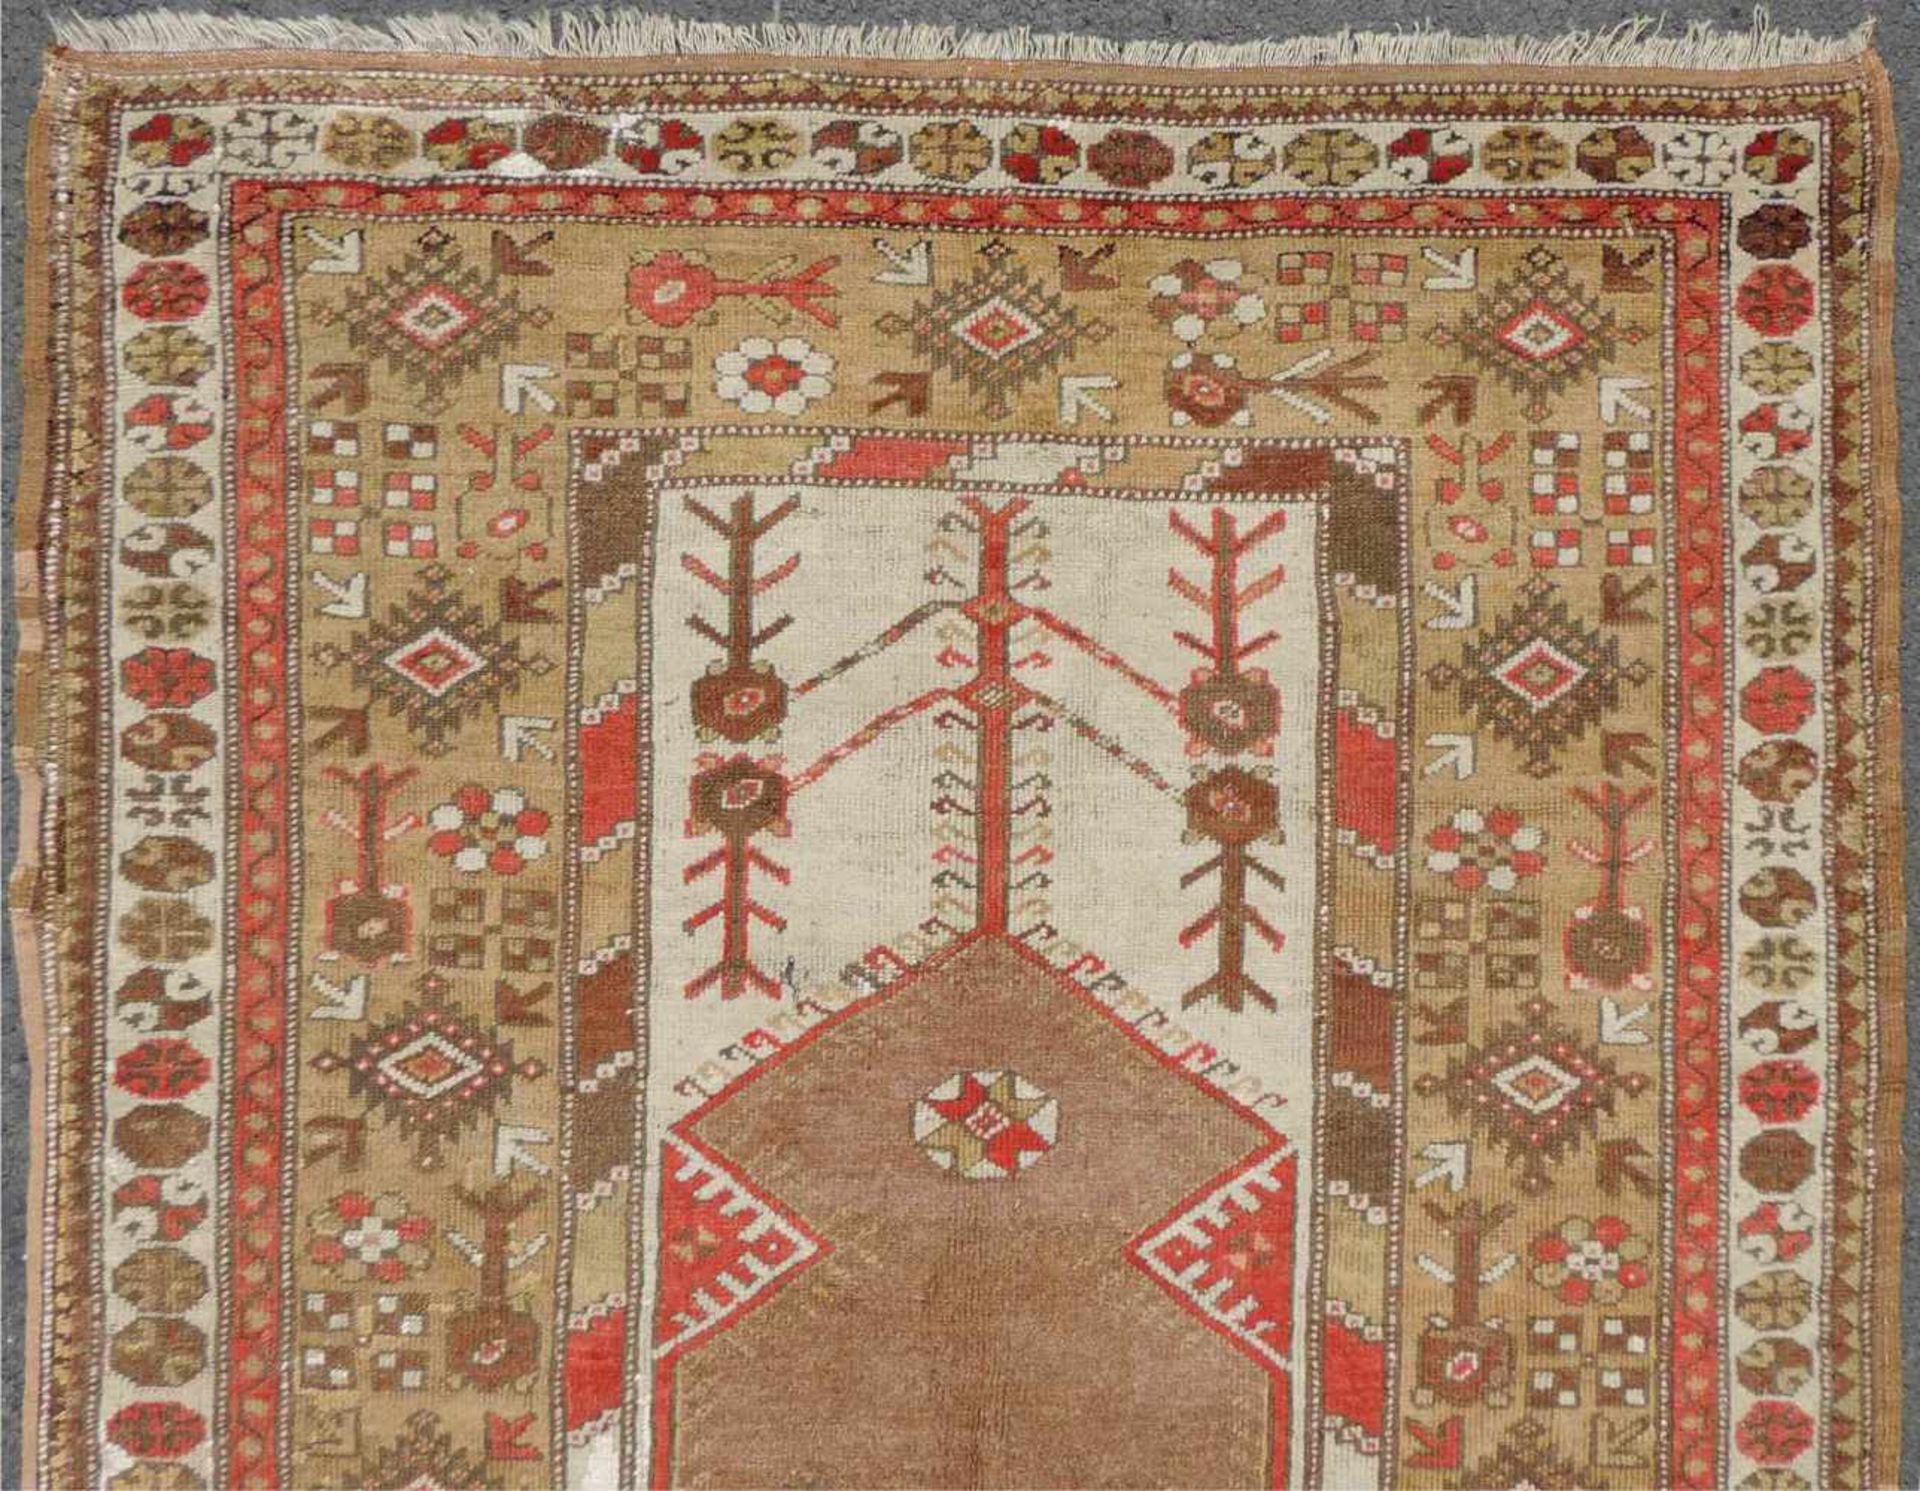 Melas Gebetsteppich. Türkei. West Anatolien. Antik um 1900. 201 cm x 128 cm. Handgeknüpft. Wolle auf - Bild 4 aus 8